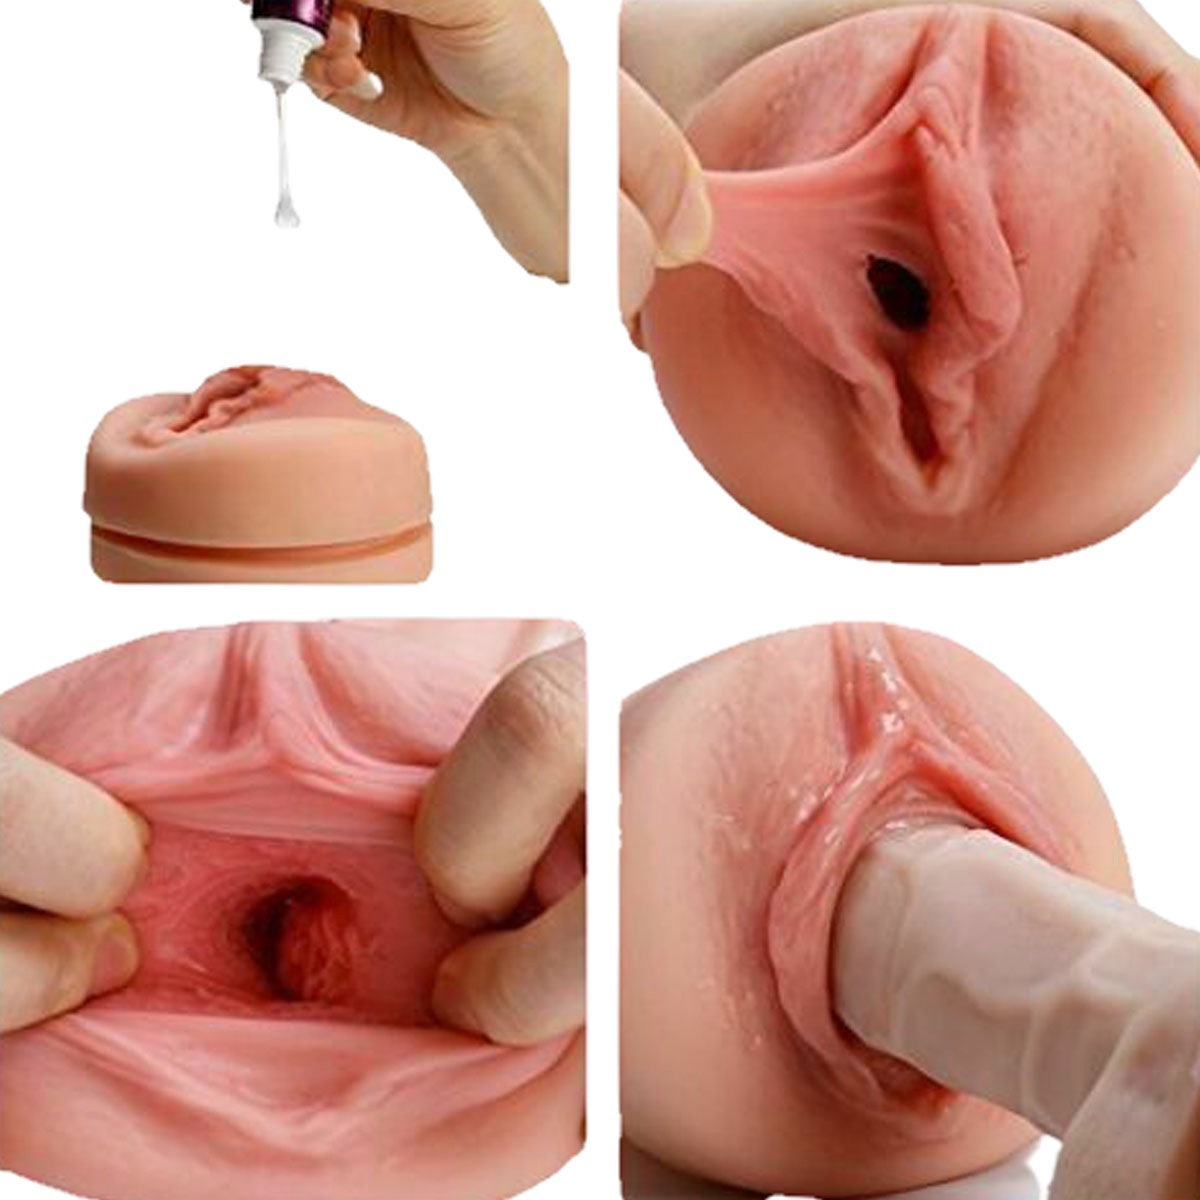 мастурбация с помощью искусственной вагиной фото 28